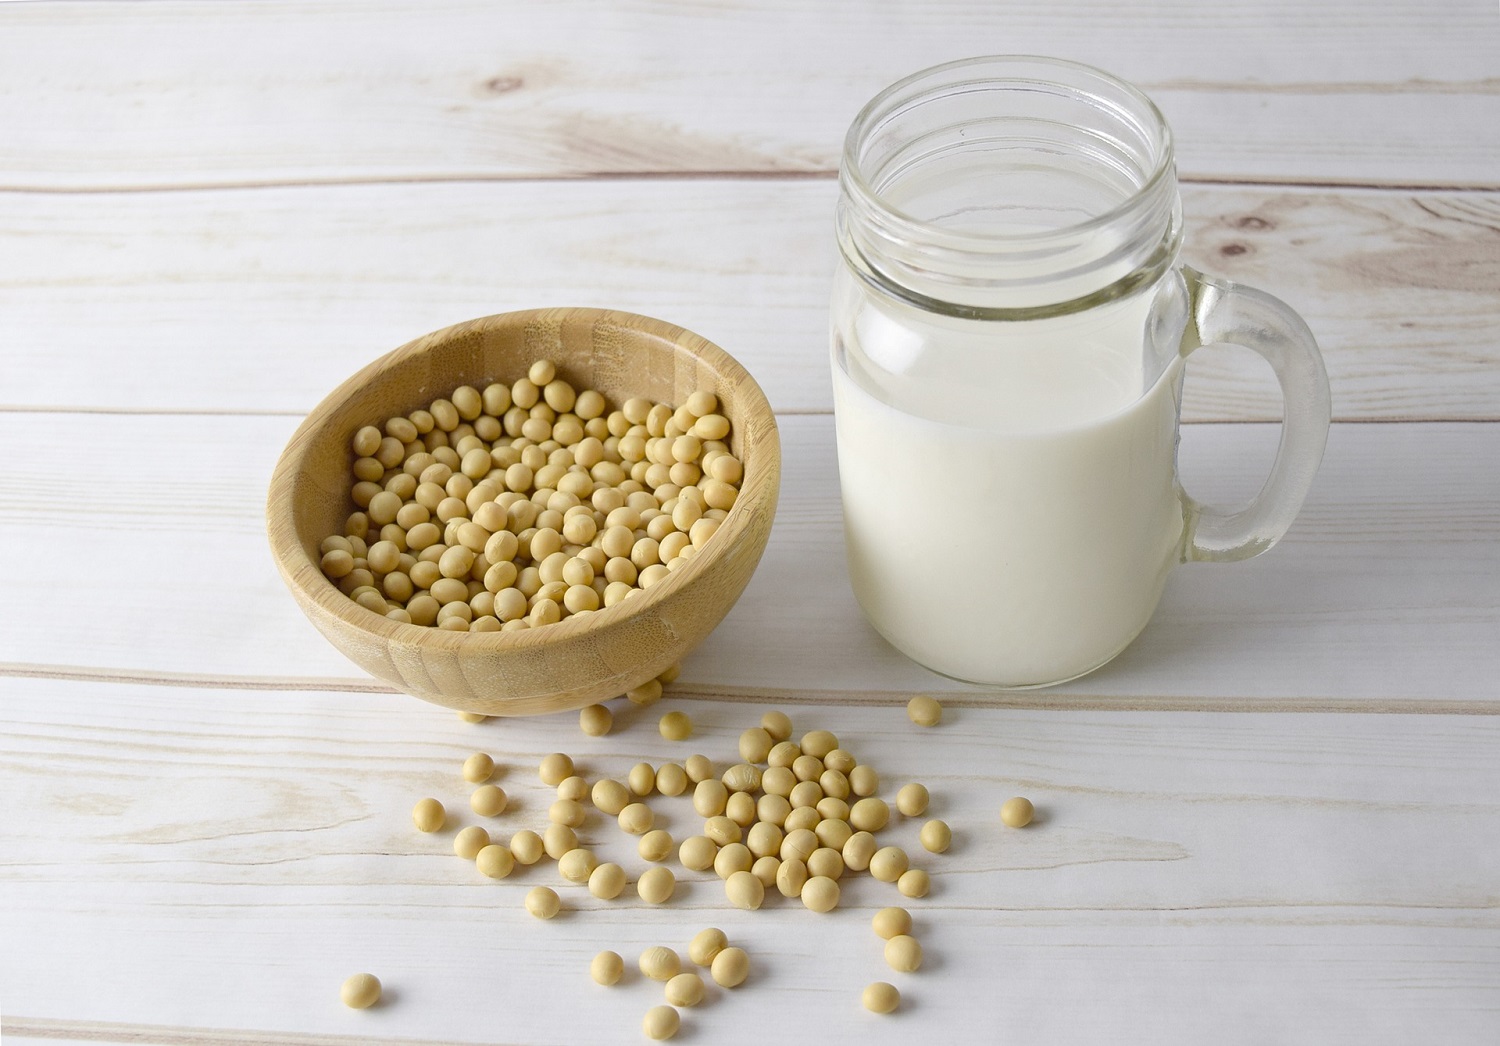 Augalinis pienas: kaip išsirinkti ir ką iš jo gaminti?